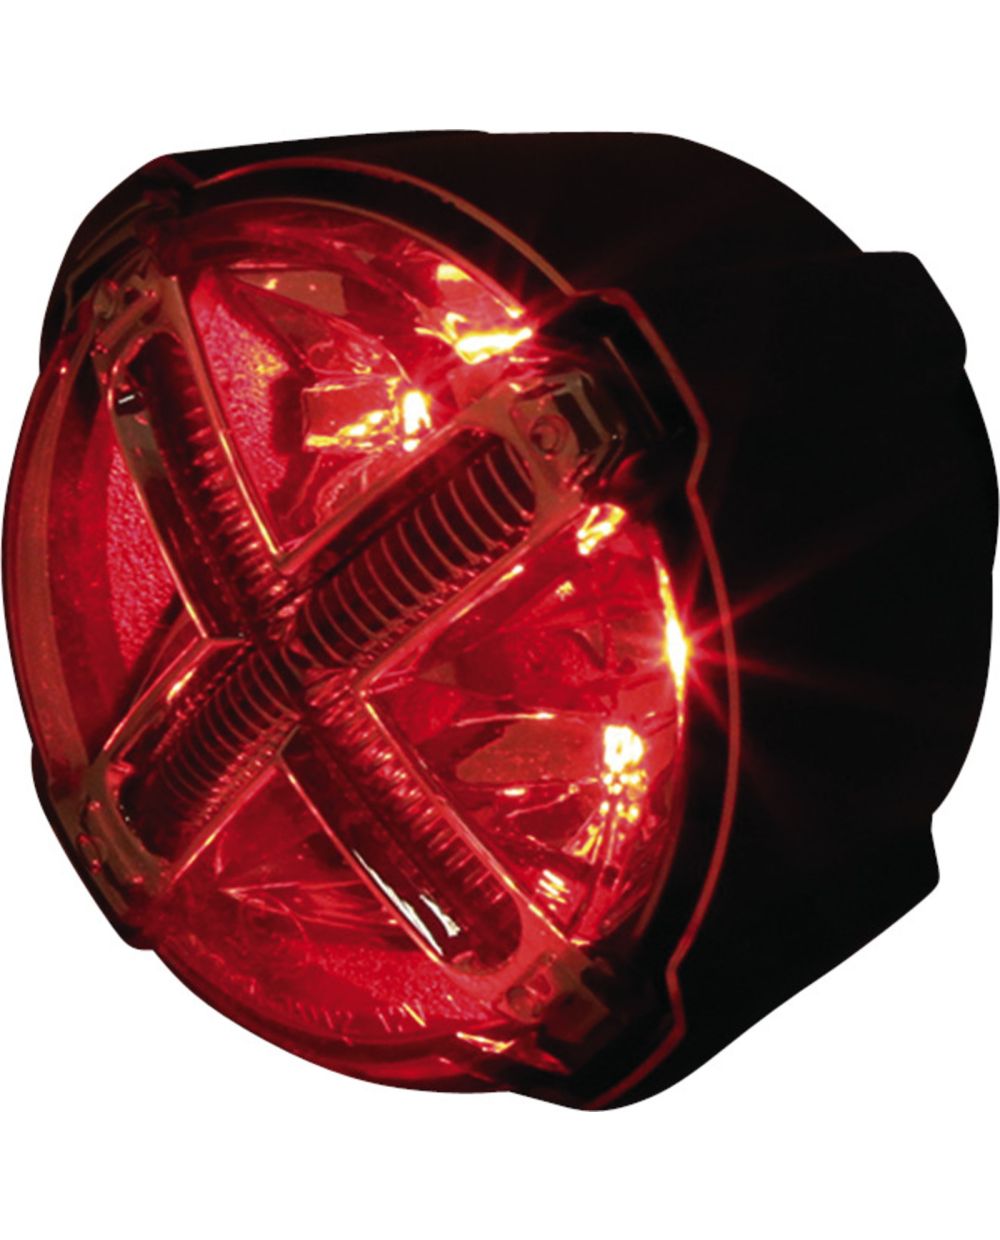 KOSO LED-Rücklicht GT-02, rotes Glas, M8 Befestigung, rückseitig  Indexstifte für Ausrichtung '+' oder 'x', passende Halter siehe Art. 51083